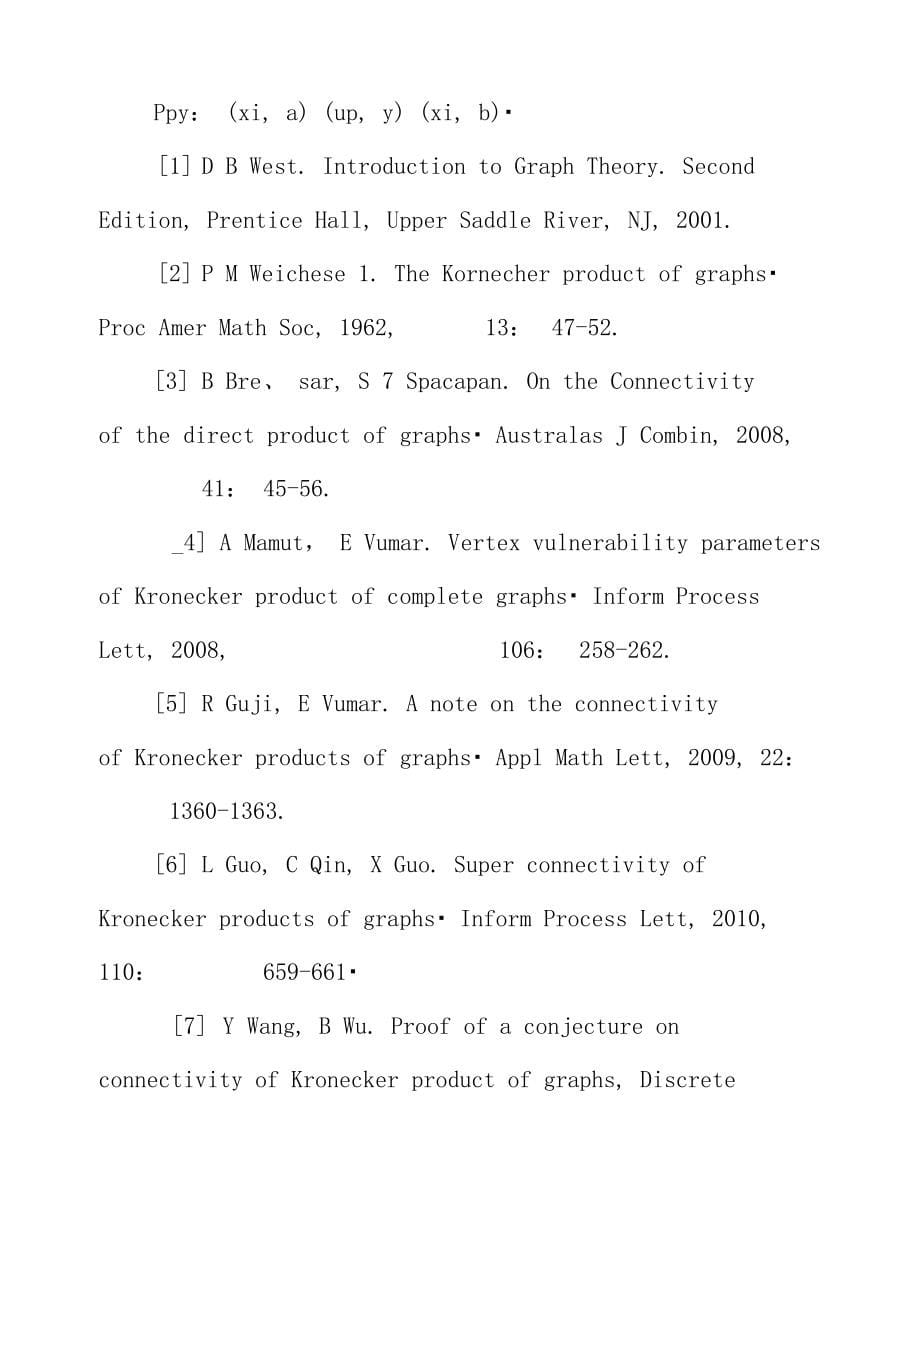 Kronecker乘积图超连通性(英文)_第5页